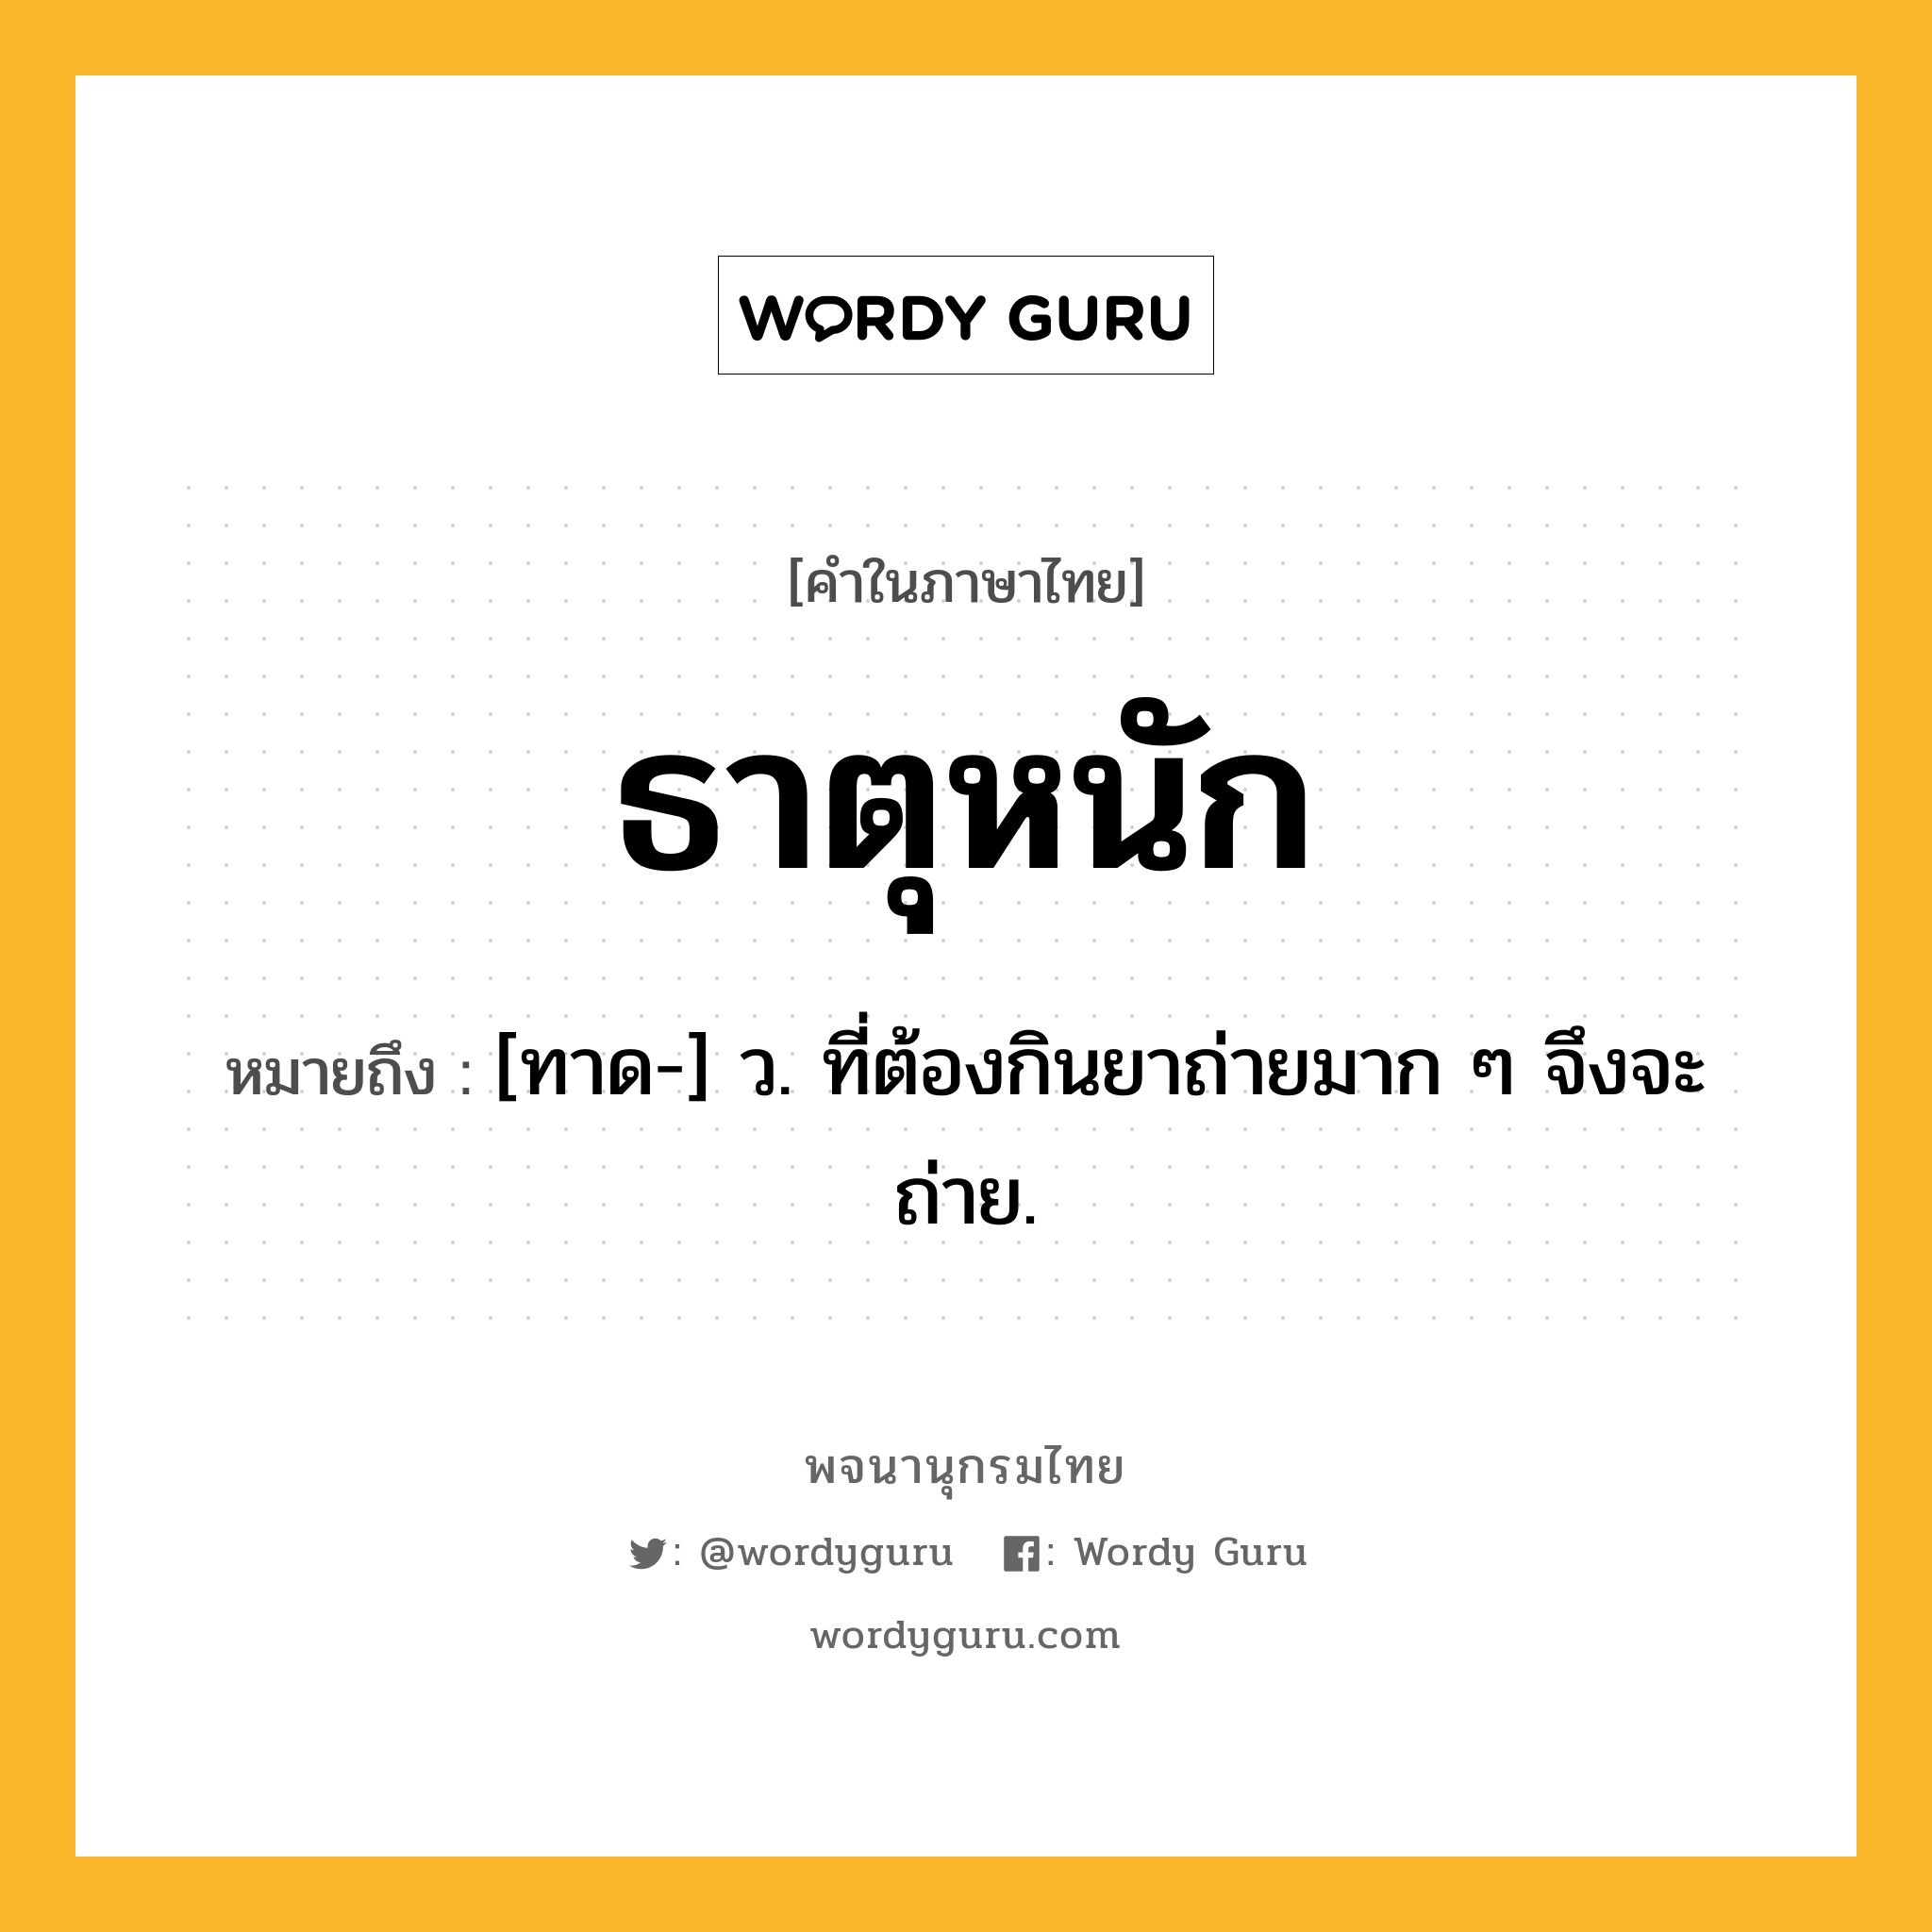 ธาตุหนัก ความหมาย หมายถึงอะไร?, คำในภาษาไทย ธาตุหนัก หมายถึง [ทาด-] ว. ที่ต้องกินยาถ่ายมาก ๆ จึงจะถ่าย.